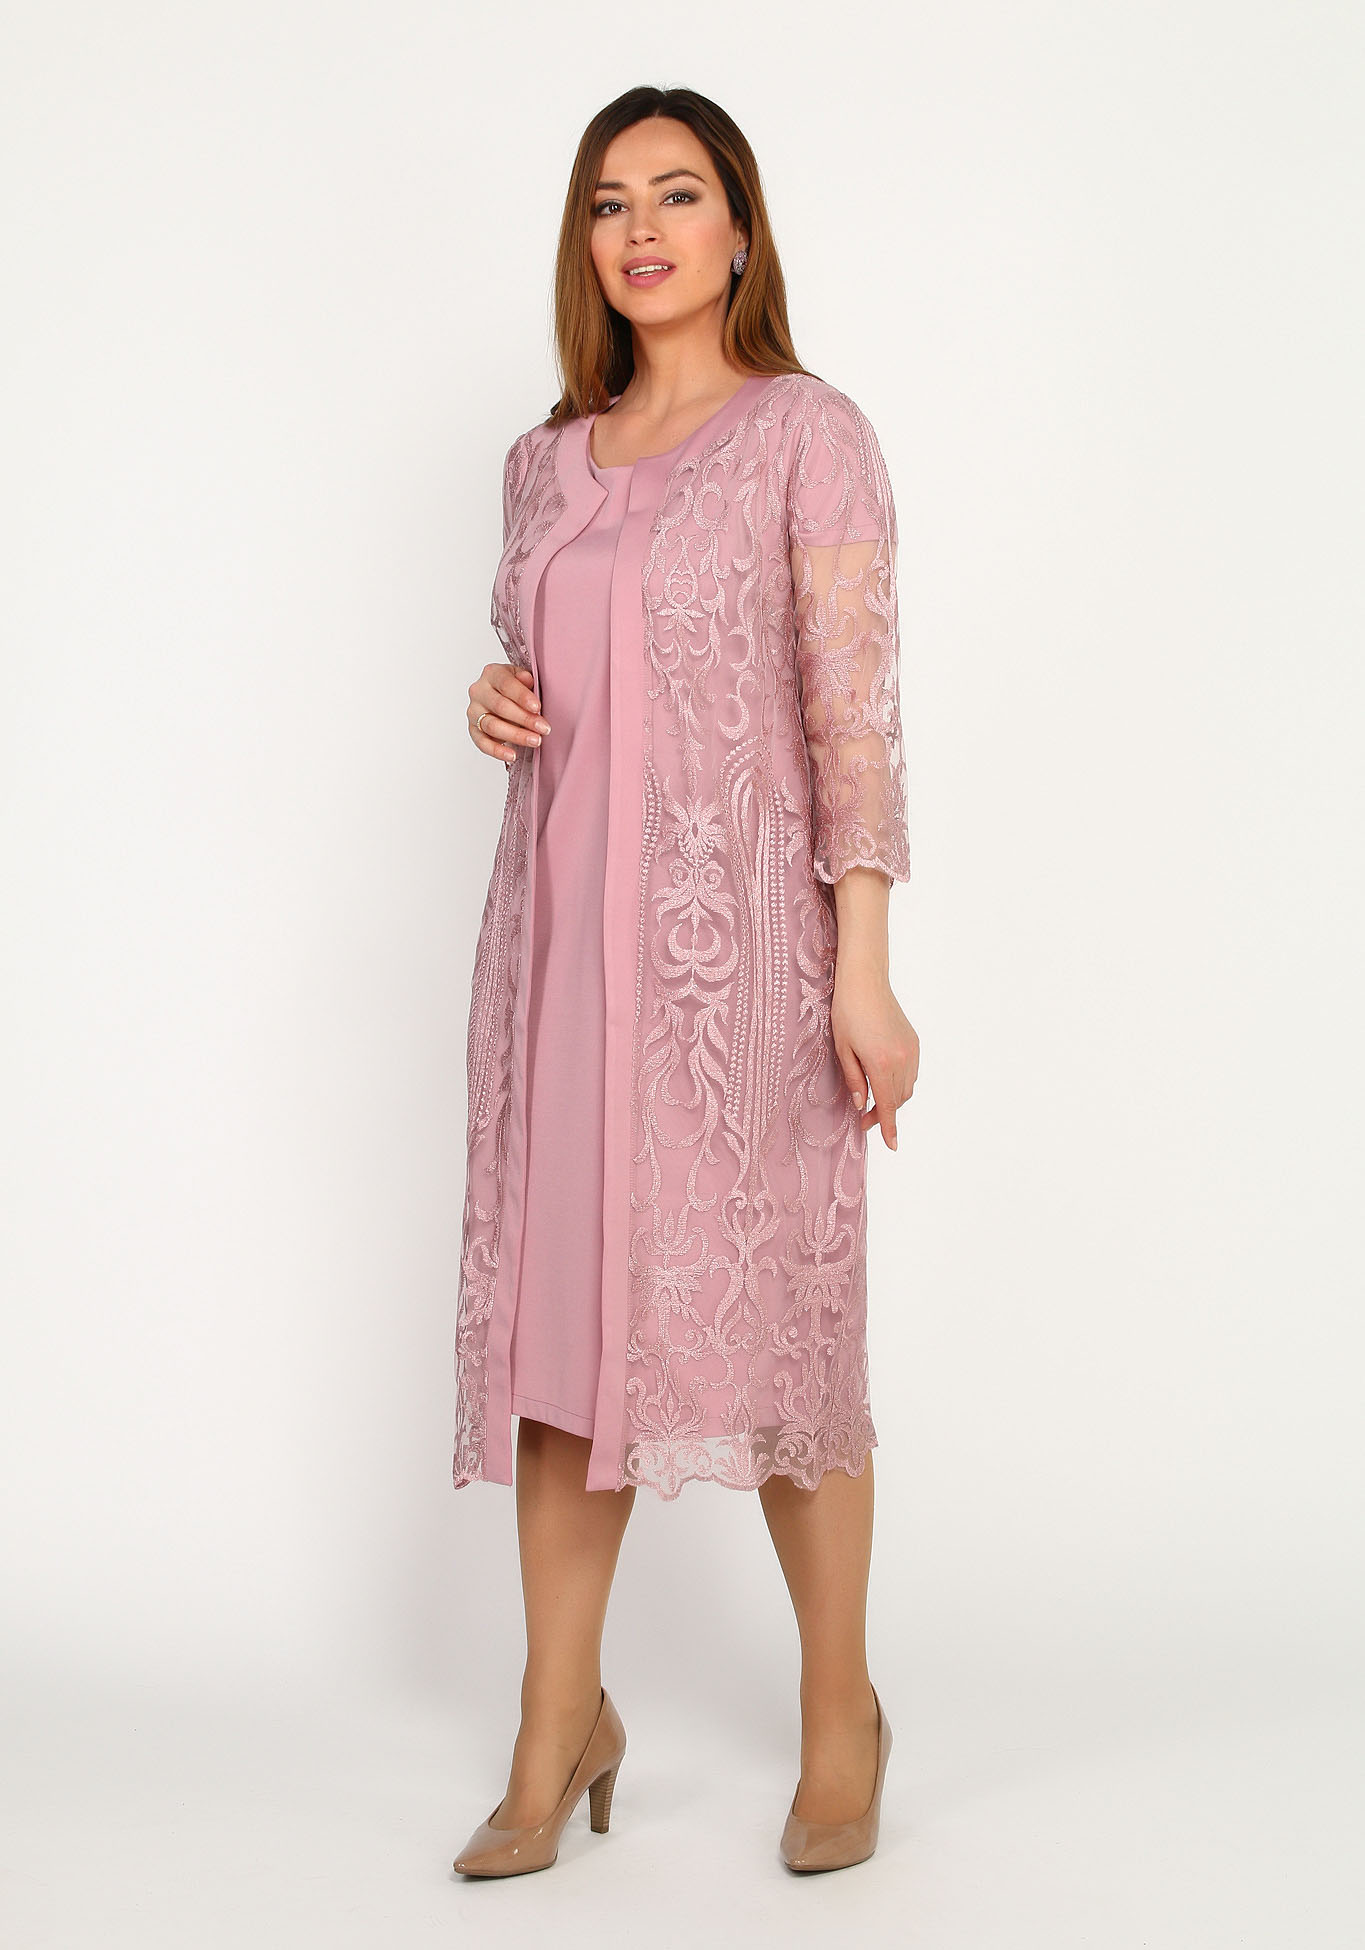 Комплект: платье и кружевная накидка Bel Fiore, размер 48, цвет розовый - фото 4